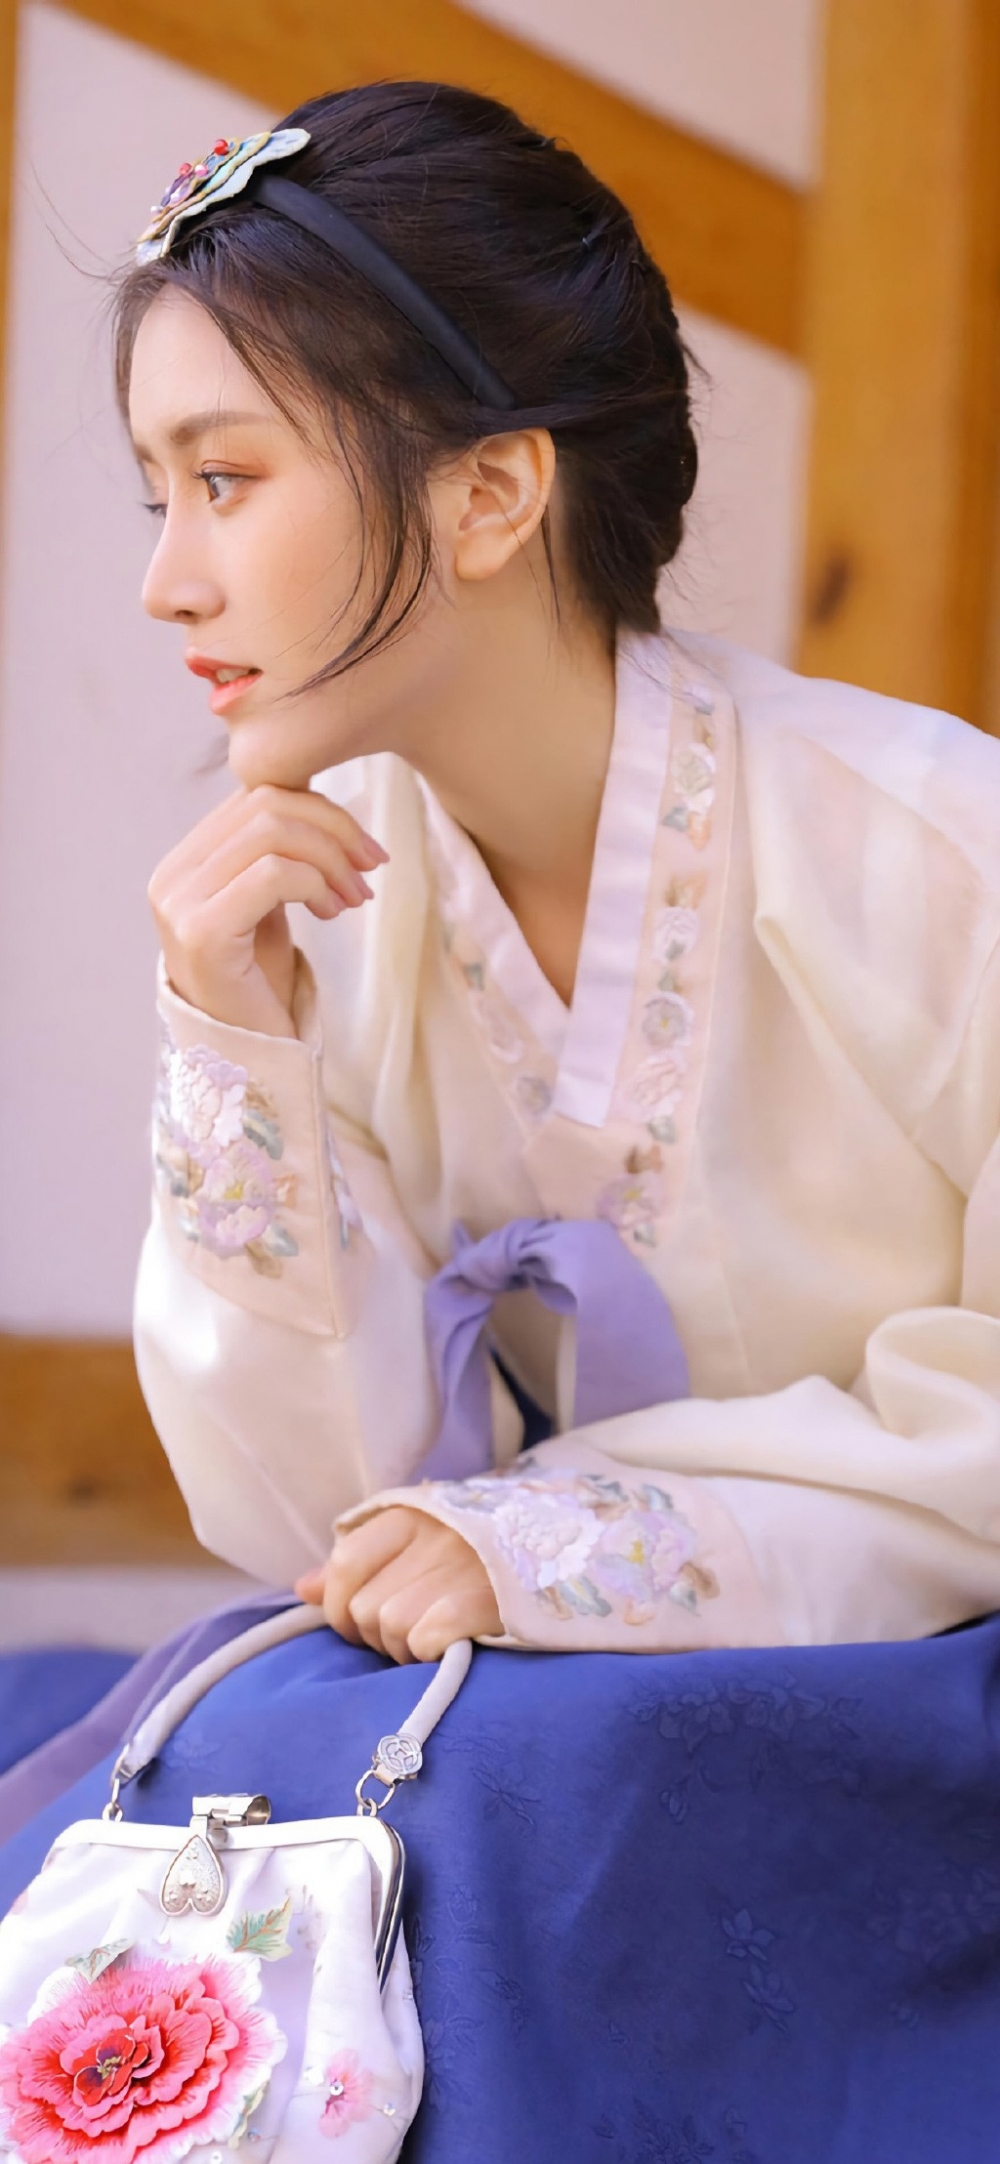 穿着汉服的日韩美女清丽动人气质脱俗唯美古风摄影